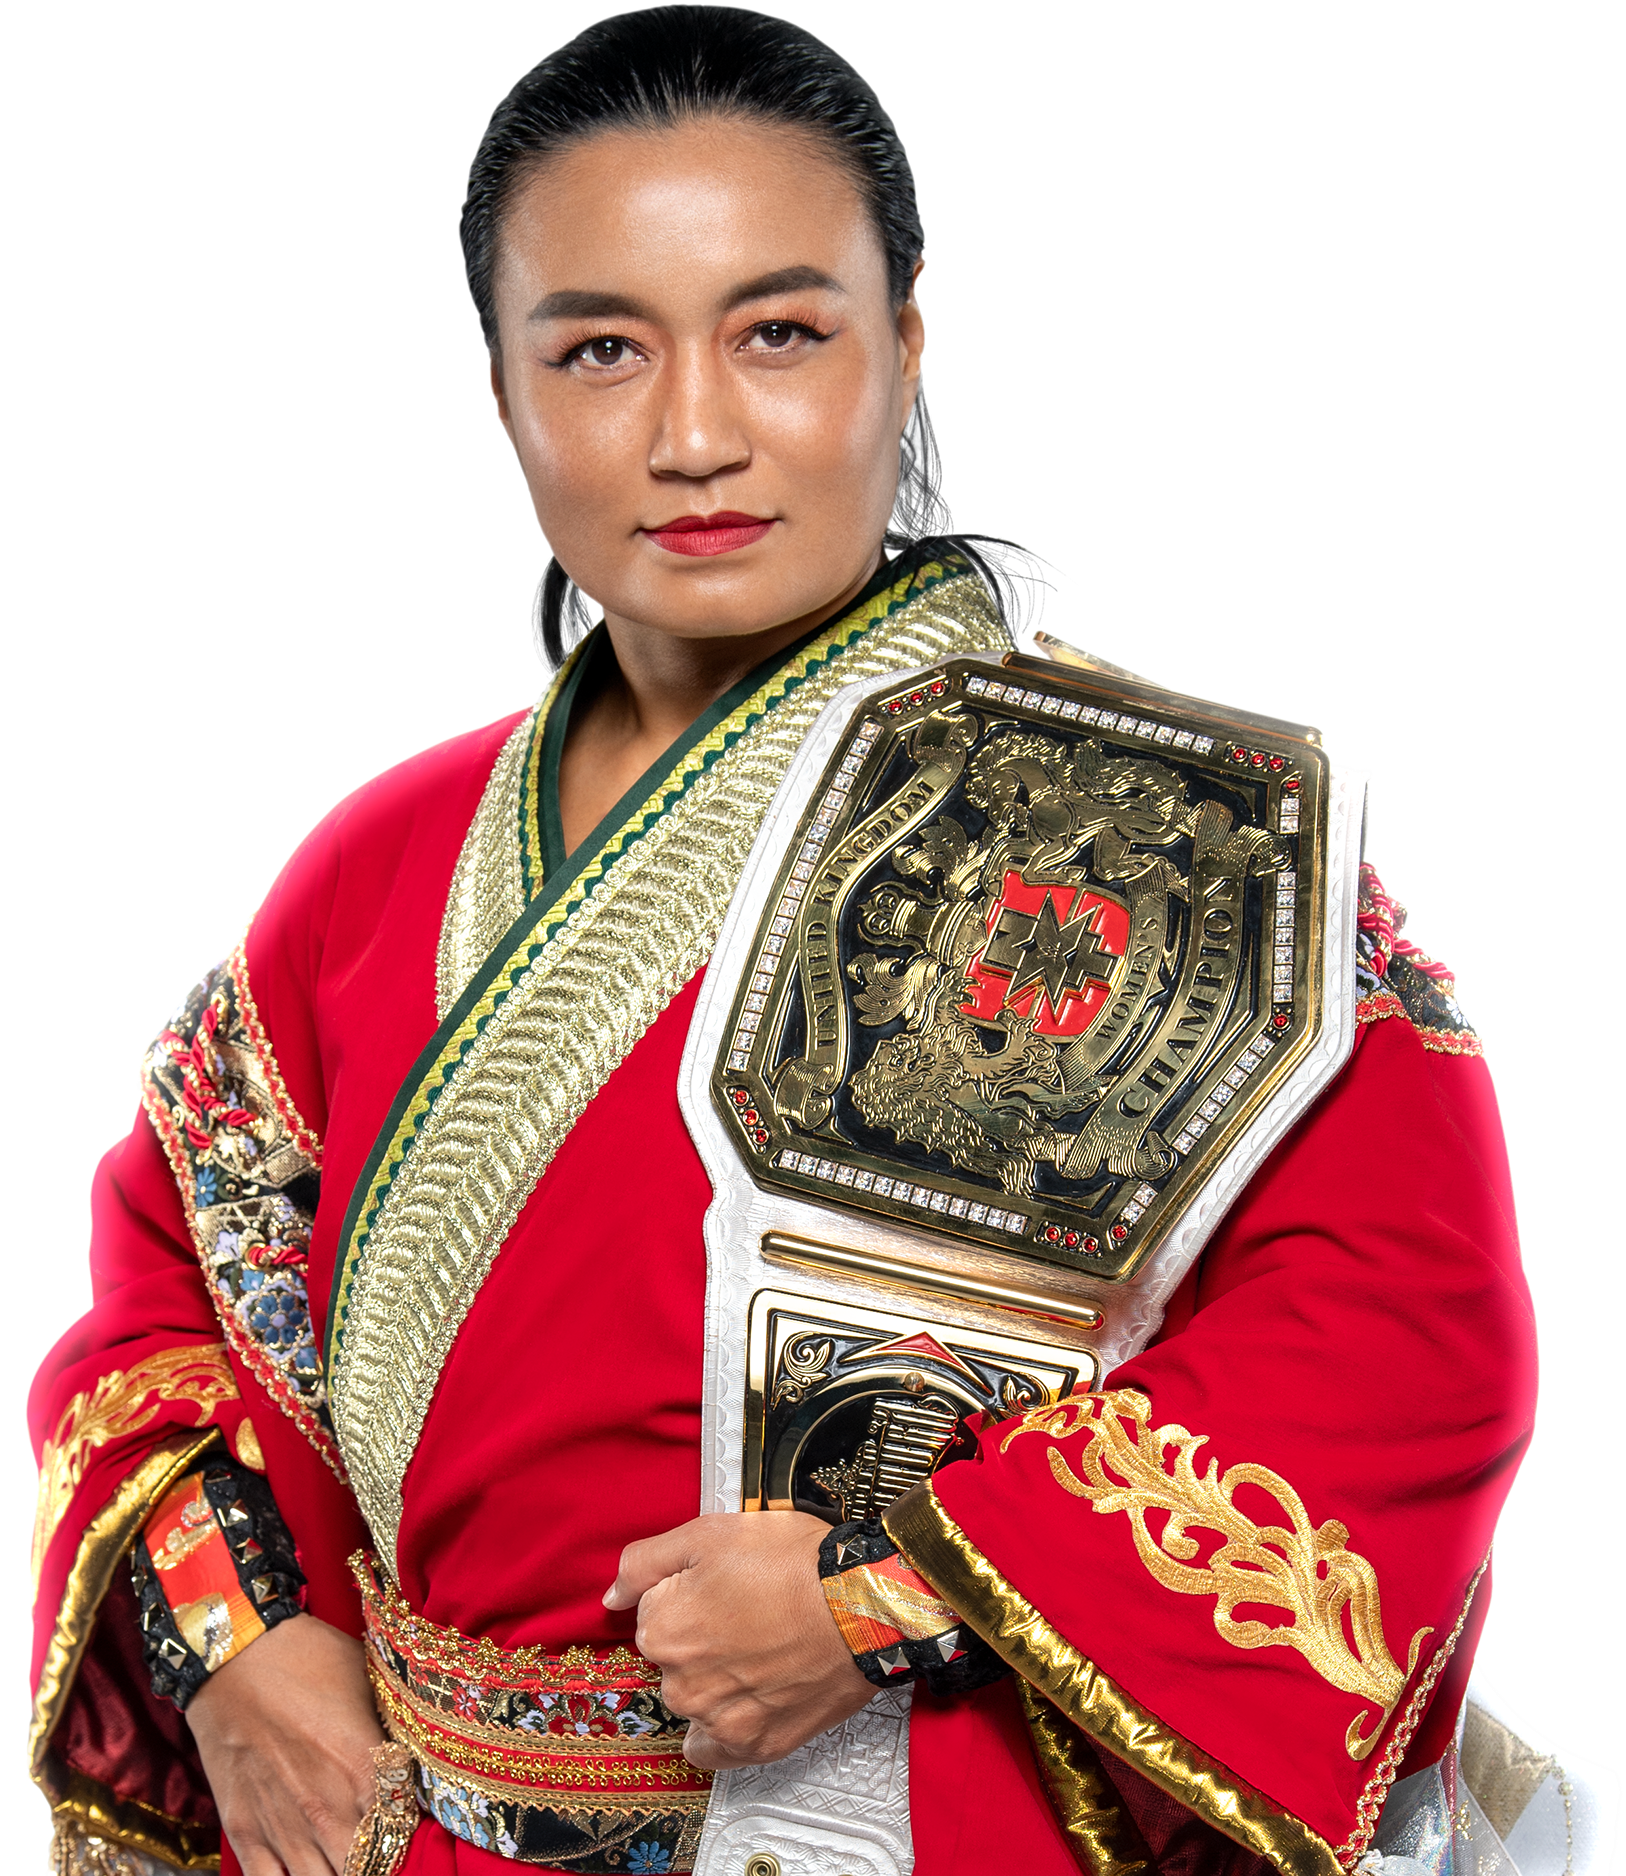 Meiko Satomura NXT Women's Champion Render 2021 by berkaycan on DeviantArt